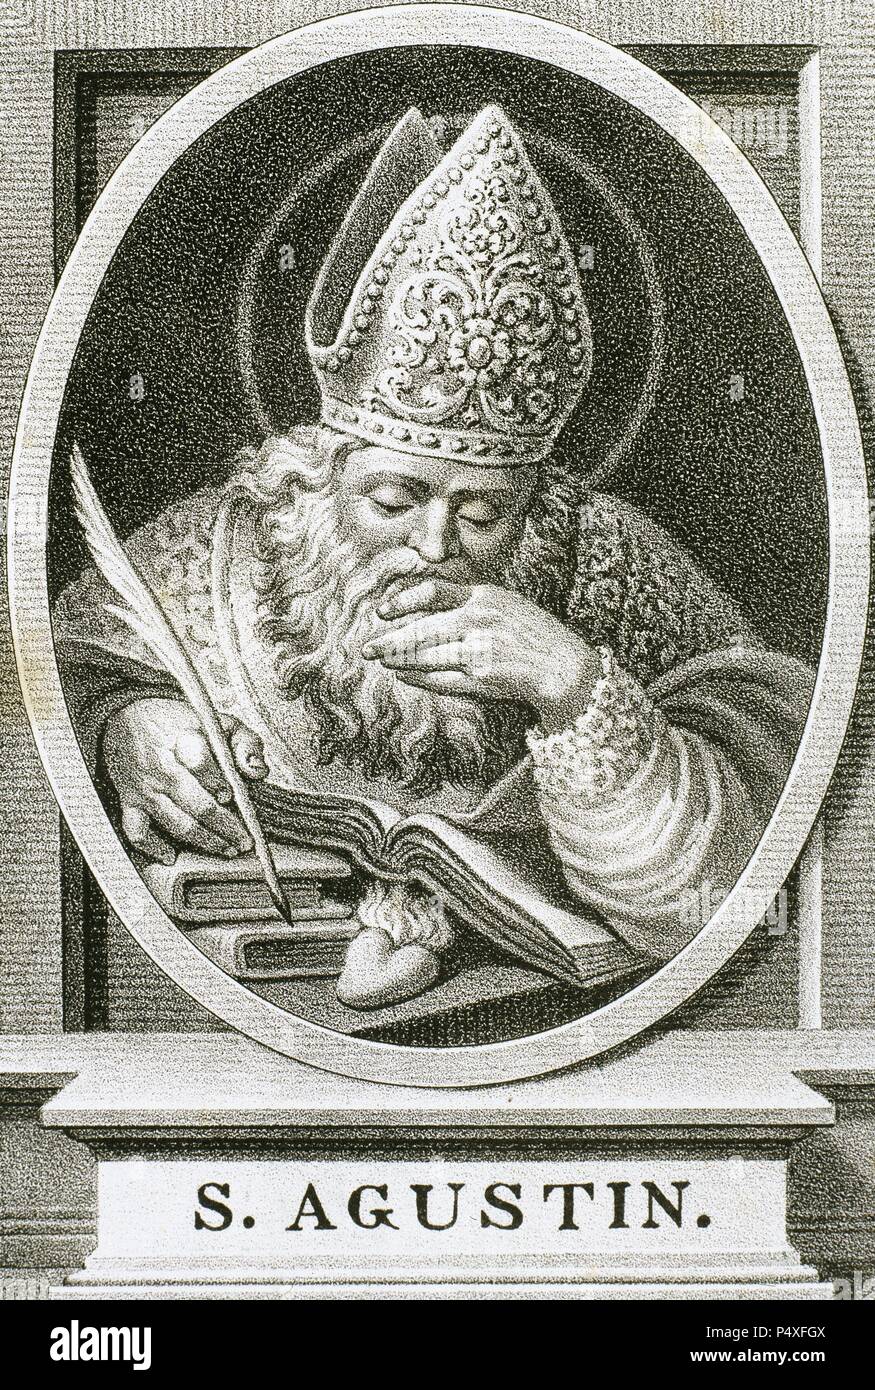 Augustinus von Hippo (354-430). Lateinischer Philosoph und Theologe. Bischof von Hippo Regius. Porträt. Gravur. 1876. Stockfoto